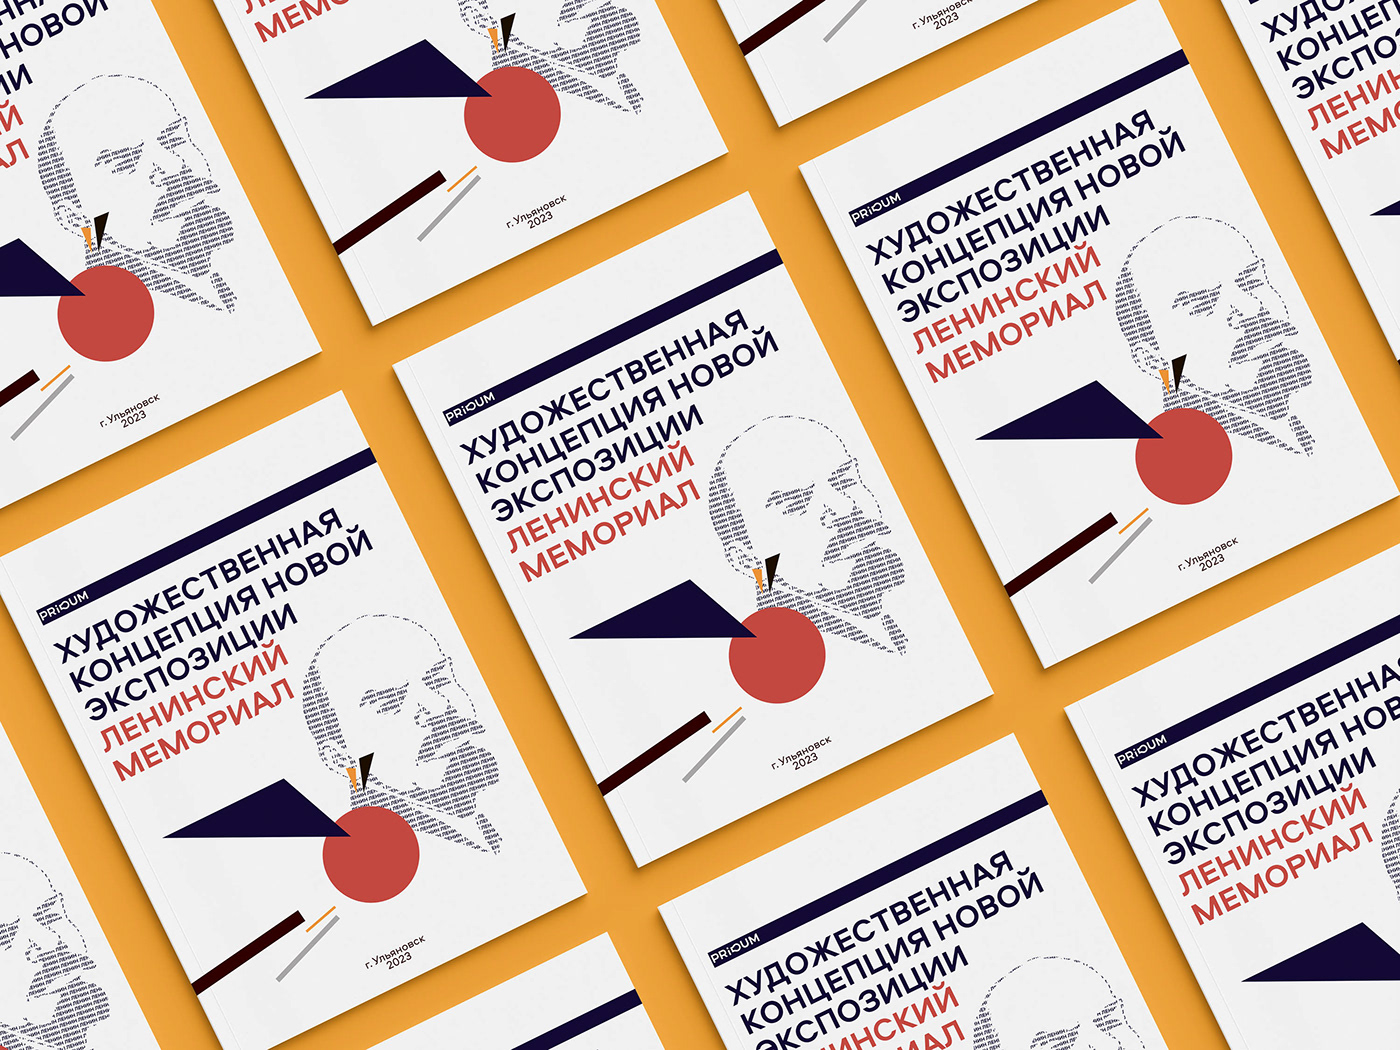 брошюра полиграфия каталог Ленин Lenin графический дизайн презентация концепция дизайн полиграфии конструктивизм